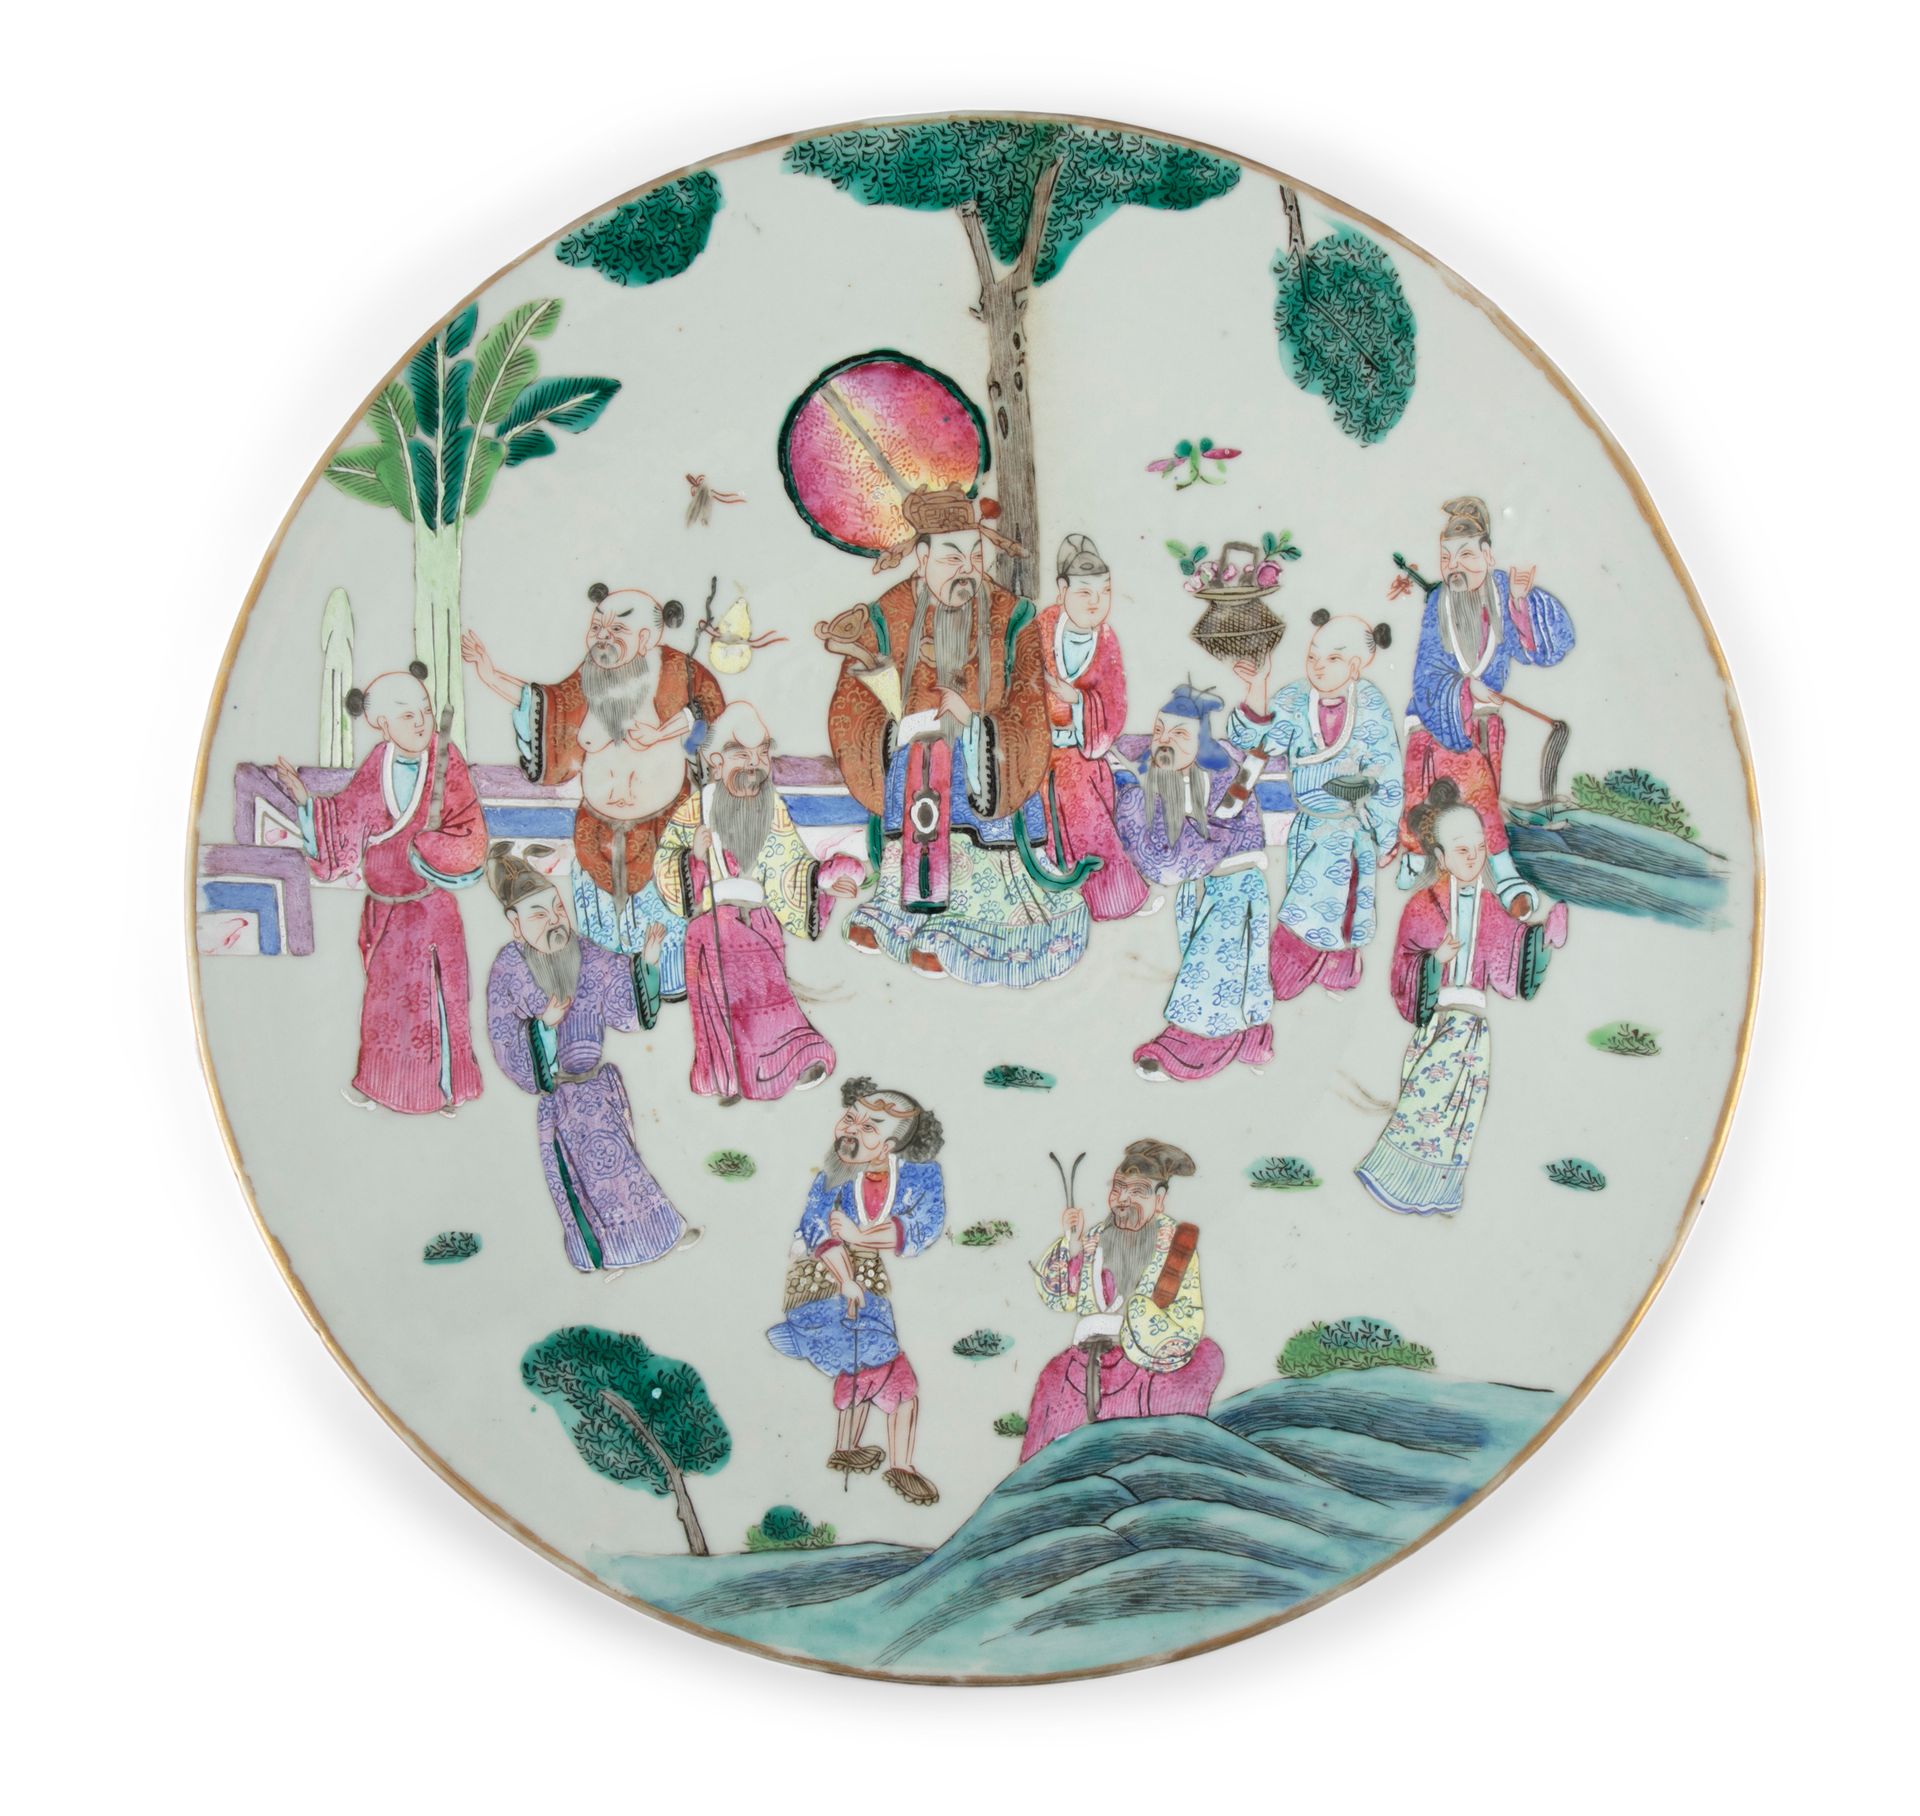 Null 大型玫瑰家族 "八仙过海 "瓷杯 中国，清代，19世纪末 D: 37,2 cm